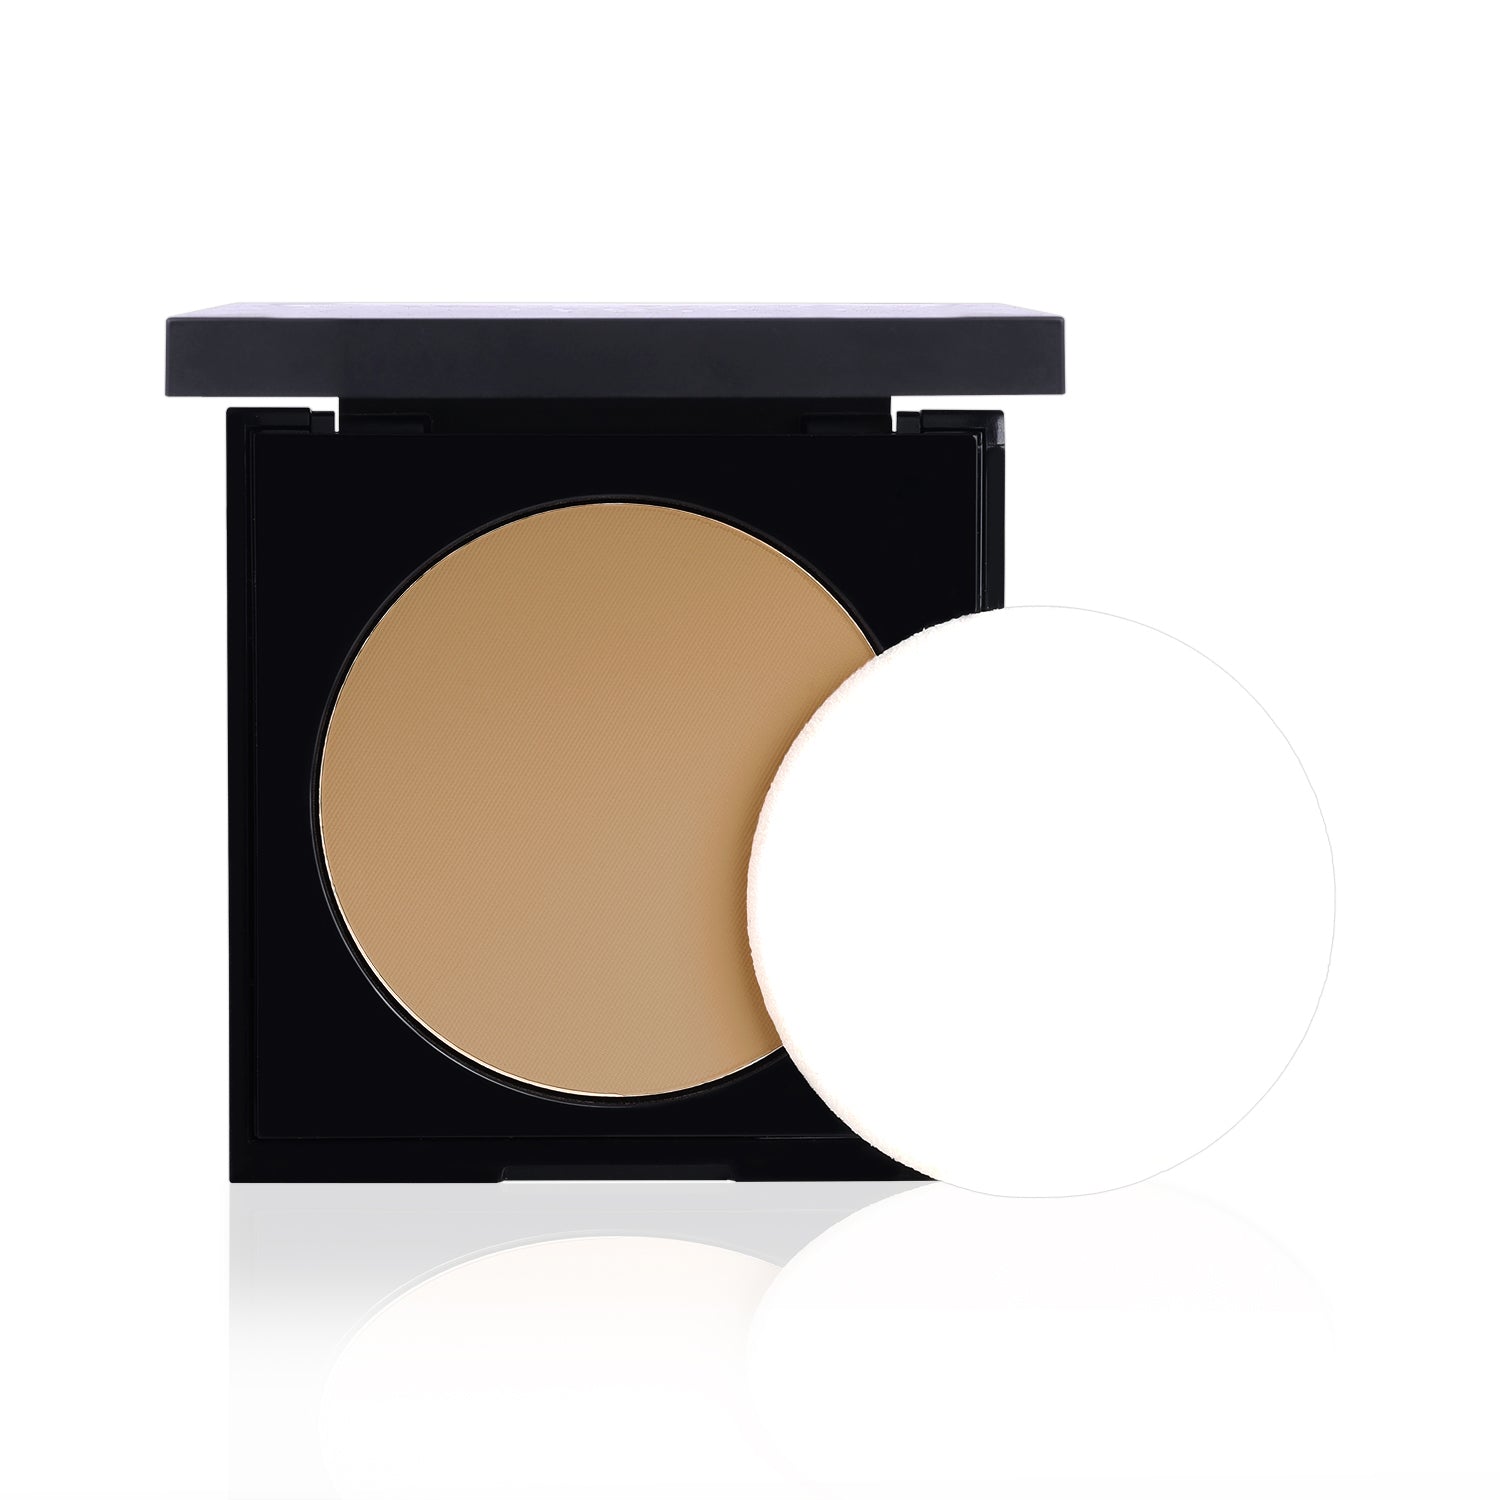 Spotlight Compact Powder (8 gm) #Color_Honey Dew